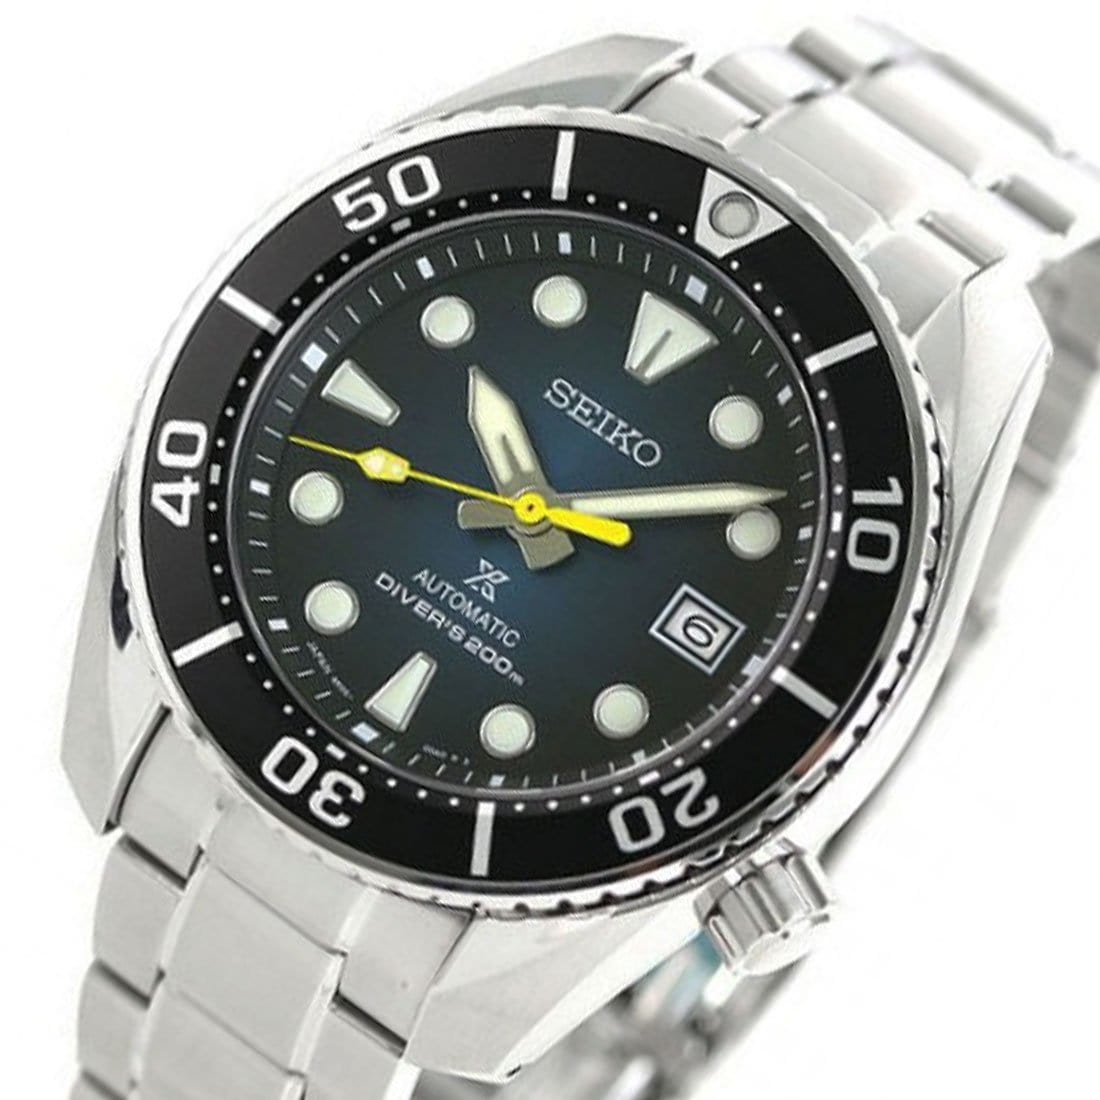 Seiko Prospex JDM Sumo Male Dive Watch SBDC099 SBDC099J